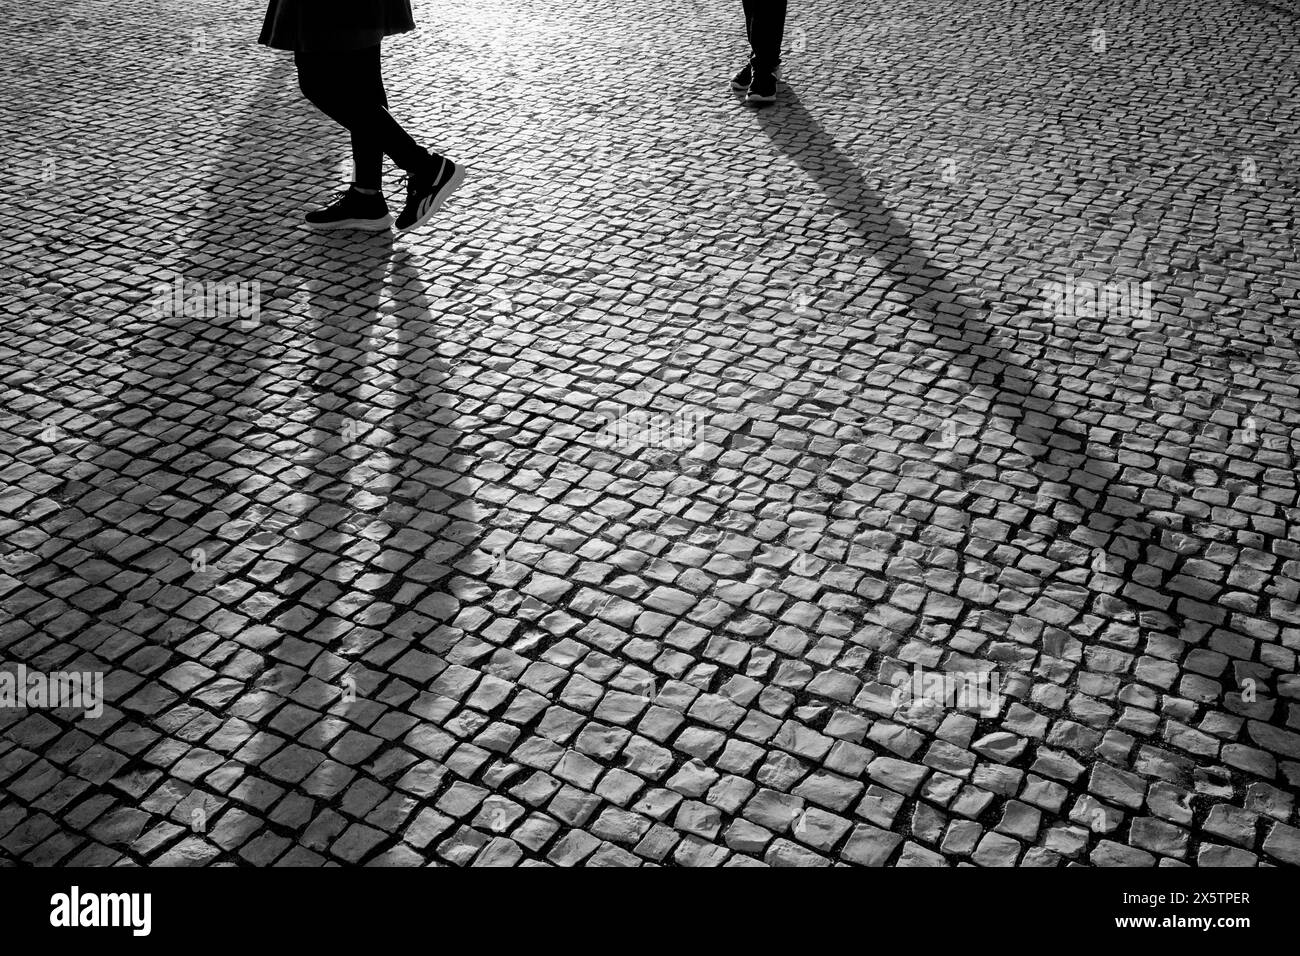 Persone che guardano a Lisbona, fotografie di strada - Praca Commercial, zona principale del porto sul mare. Foto Stock